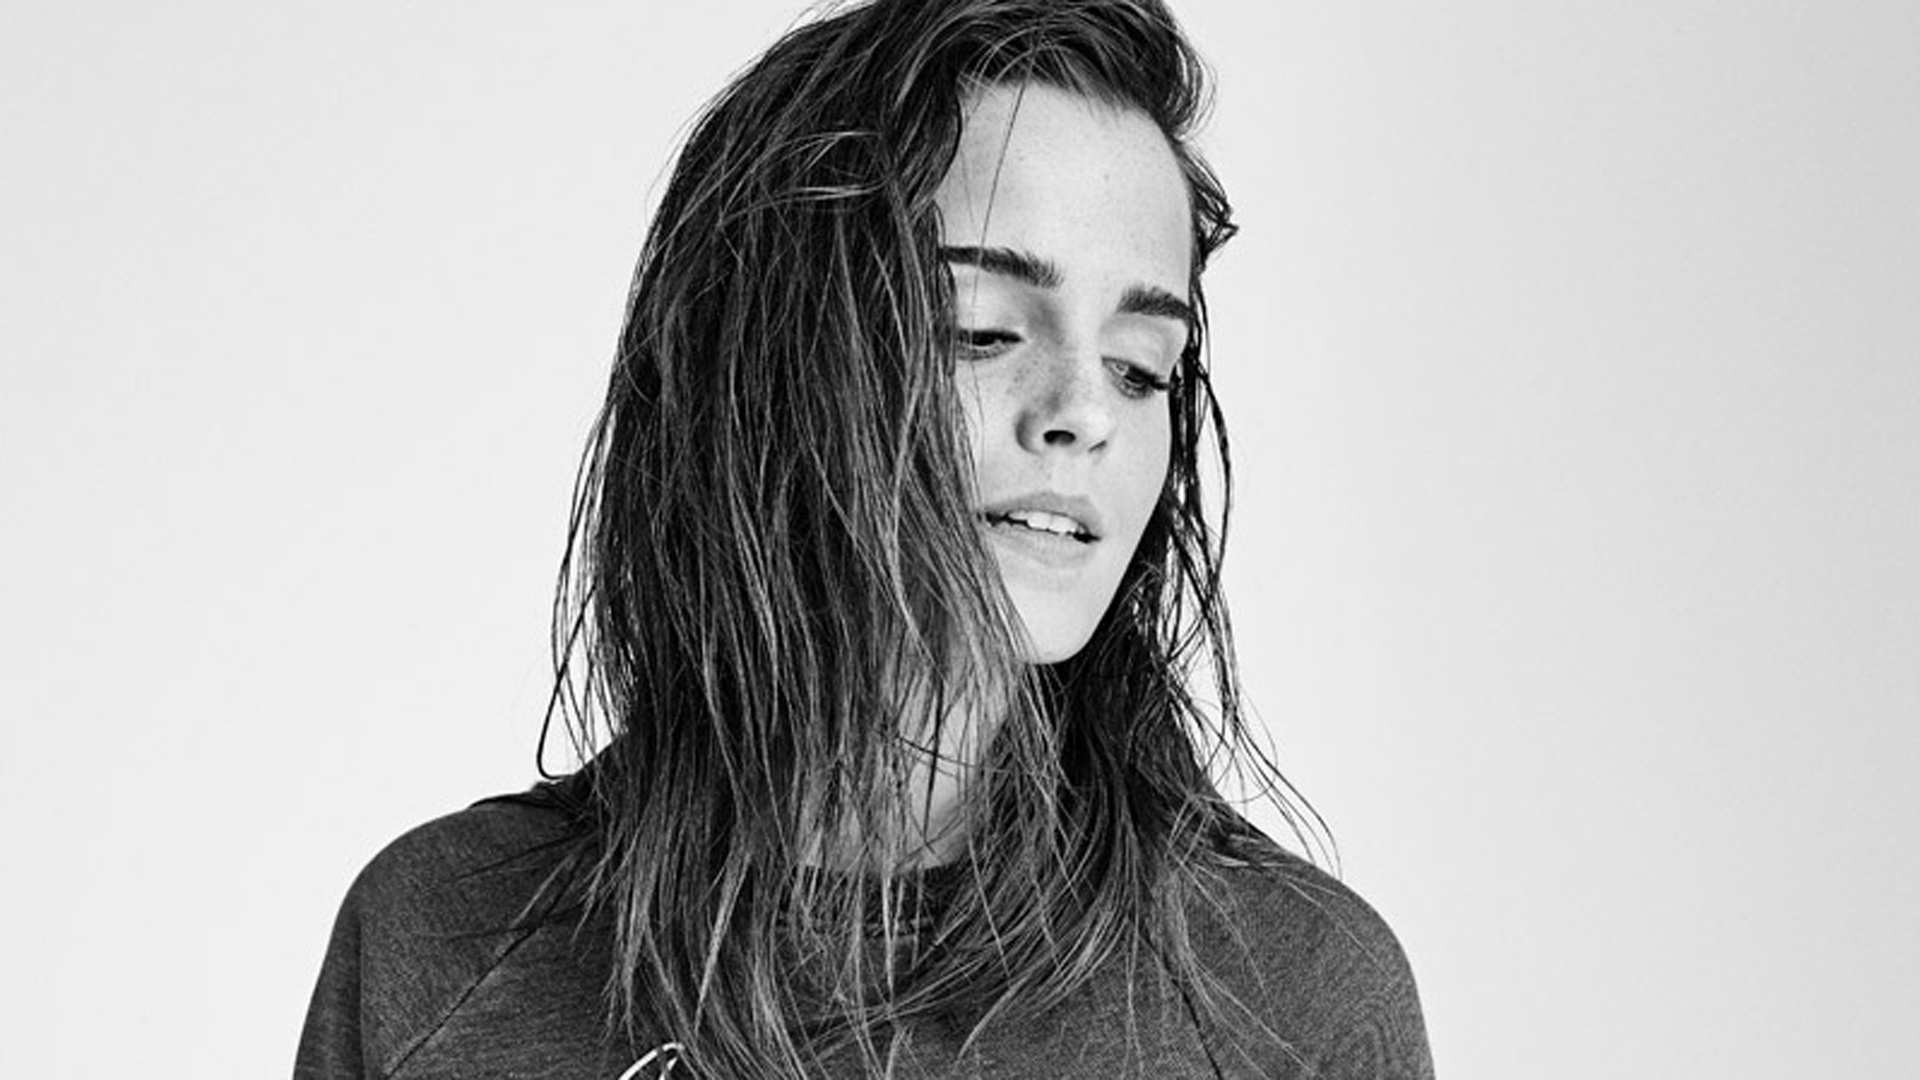 Fondo de pantalla de Emma Watson en blanco y negro 65485 1920x1080px